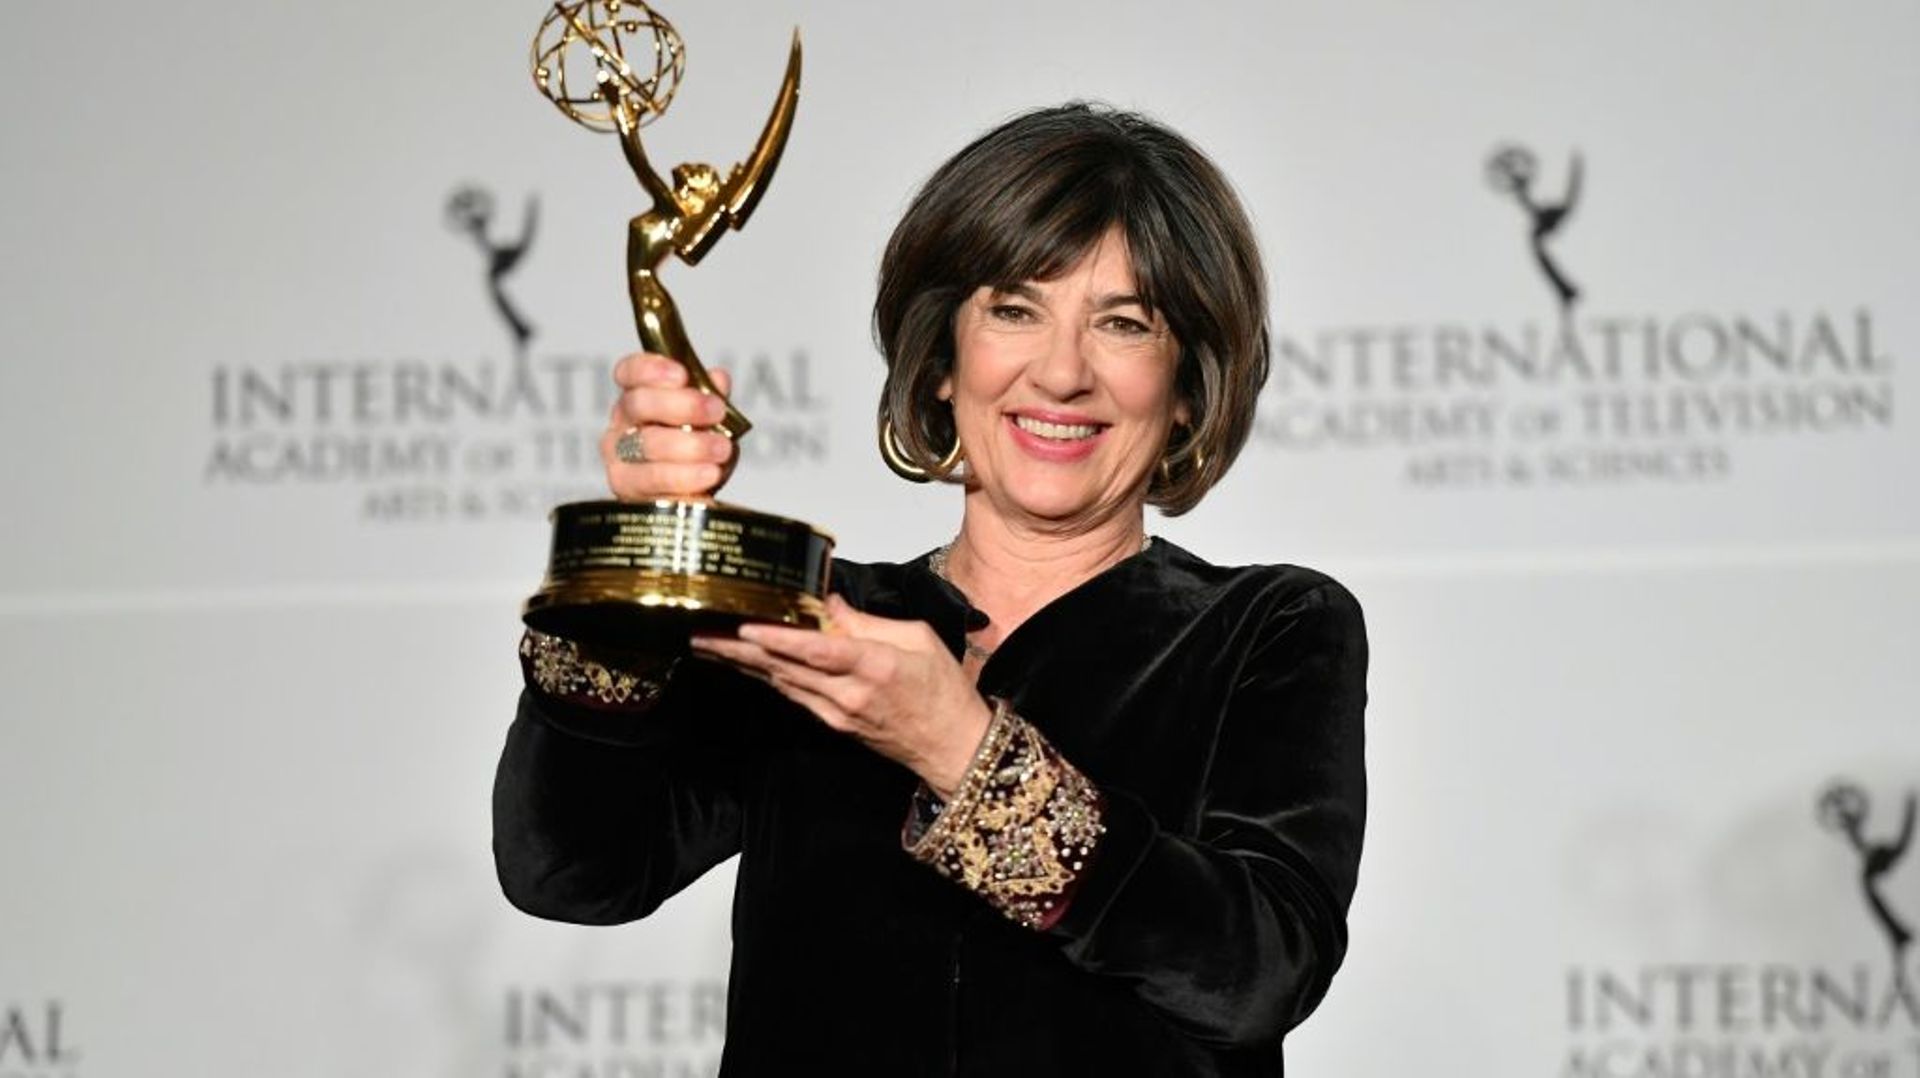 La journaliste de CNN Christiane Amanpour pose avec un Emmy Award à New York en novembre 2019